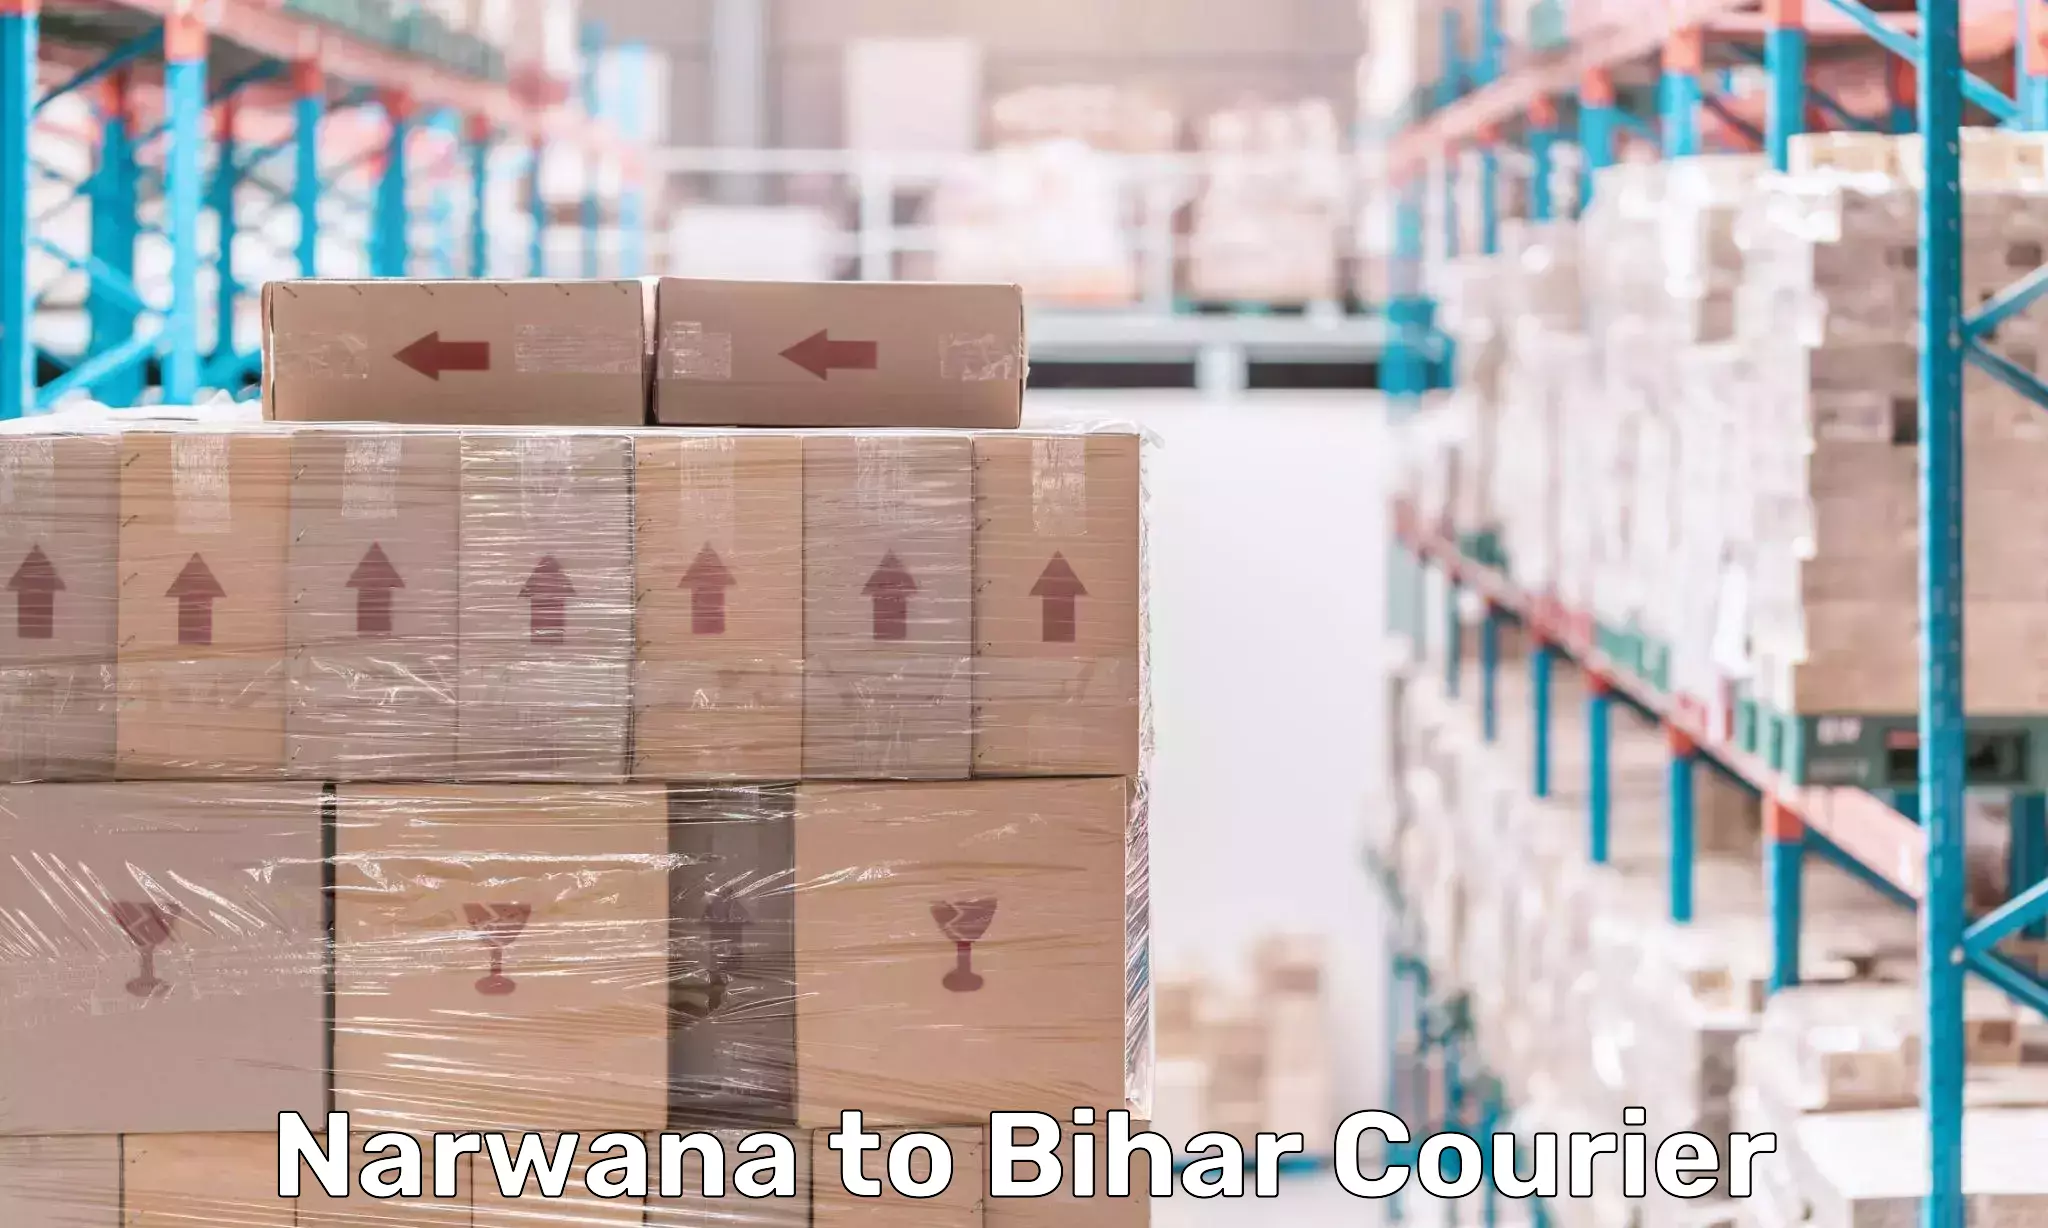 Round-the-clock parcel delivery Narwana to Mashrakh